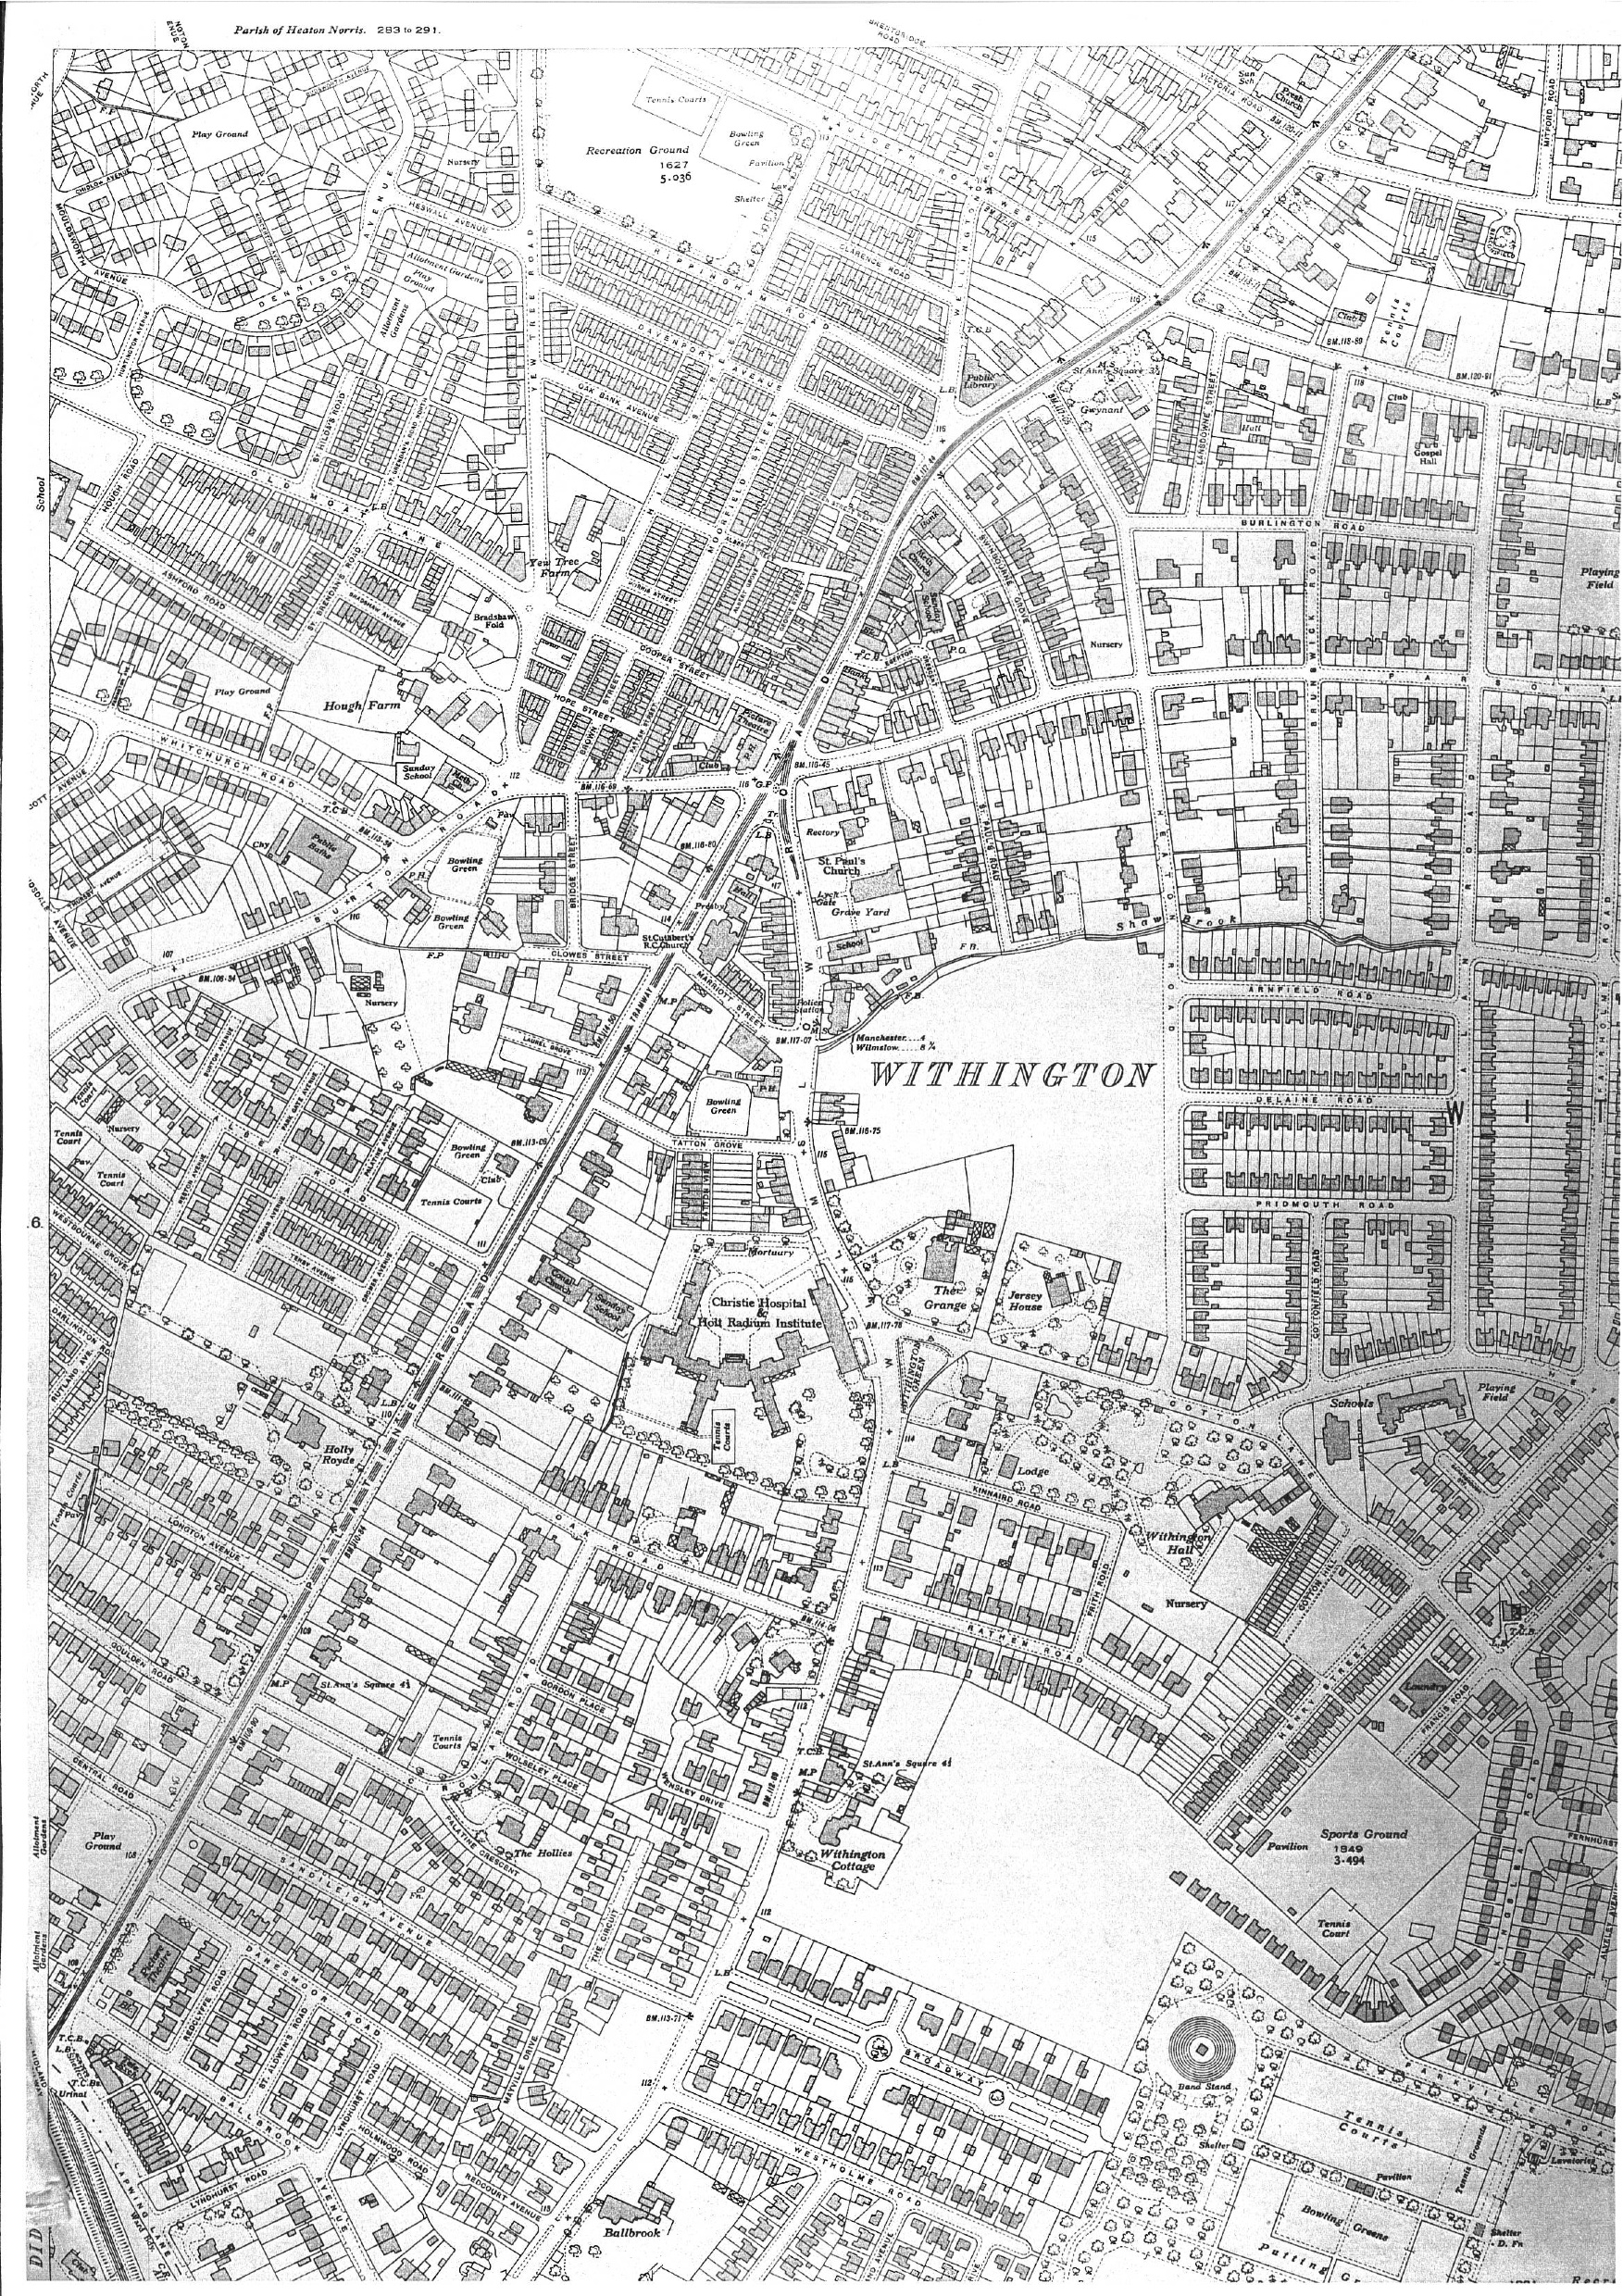 Ordnance survey map, 1934, Withington